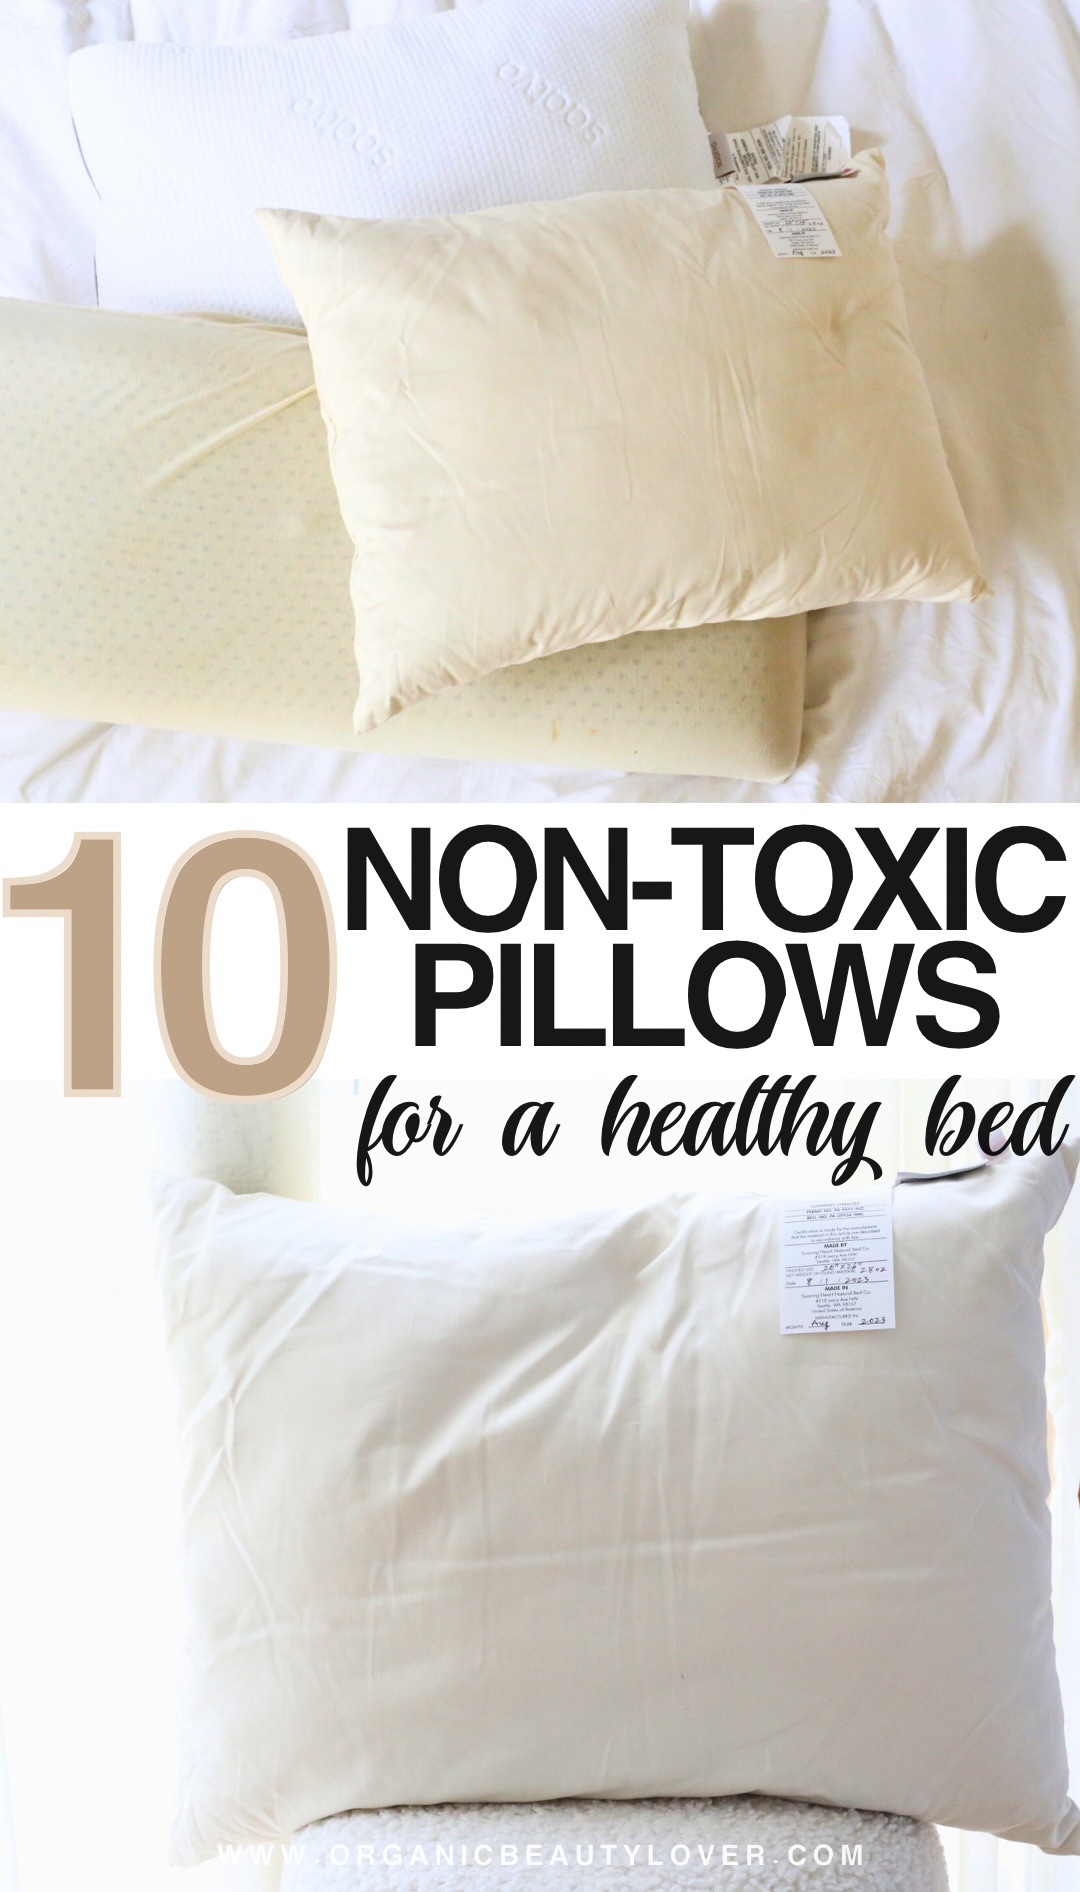 Non-toxic Body Pillow - Organic Cotton Cover